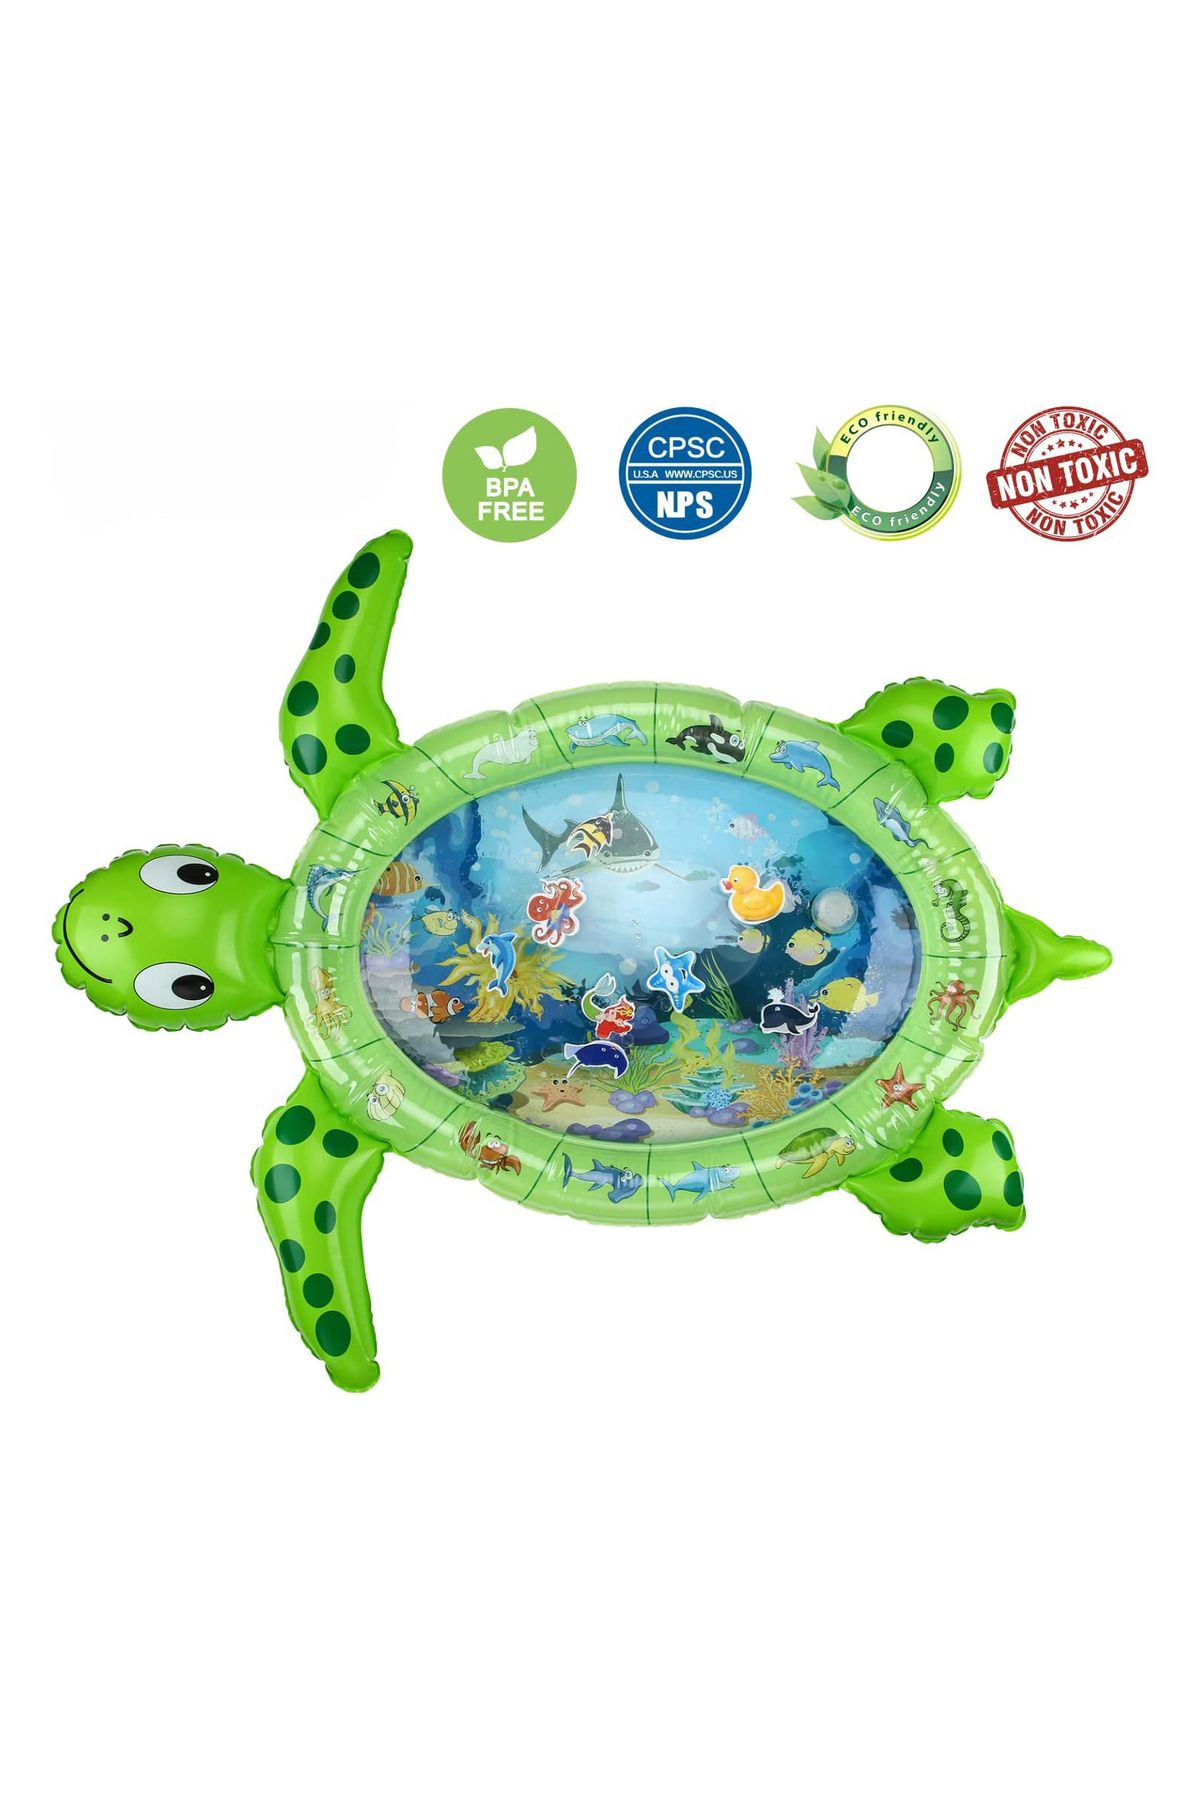 elfobaby Bebek Su Oyun Matı Tummy Time Aktivite Oyuncağı Su Havuzu - Kaplumbağa